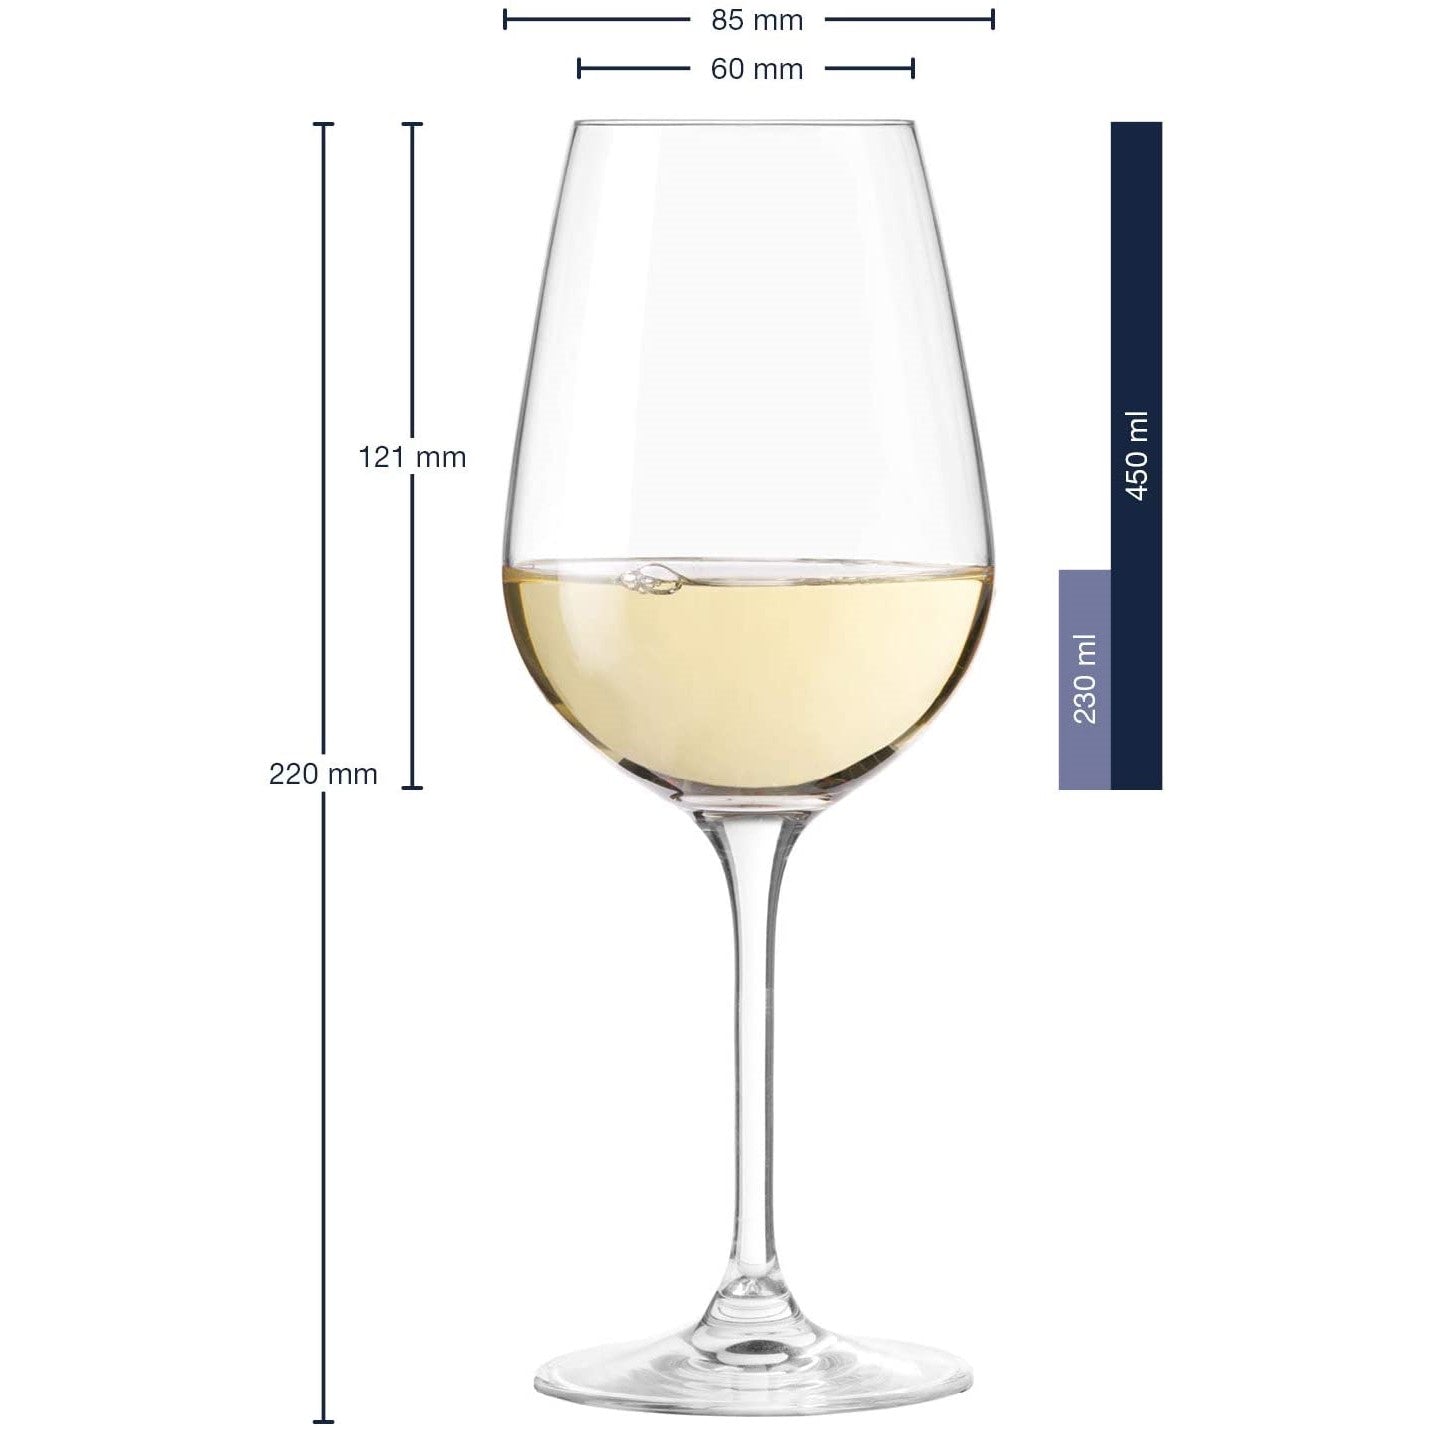 Leonardo TIVOLI Champagne, Red & White Wine Glasses - Set of 18 (6 each)